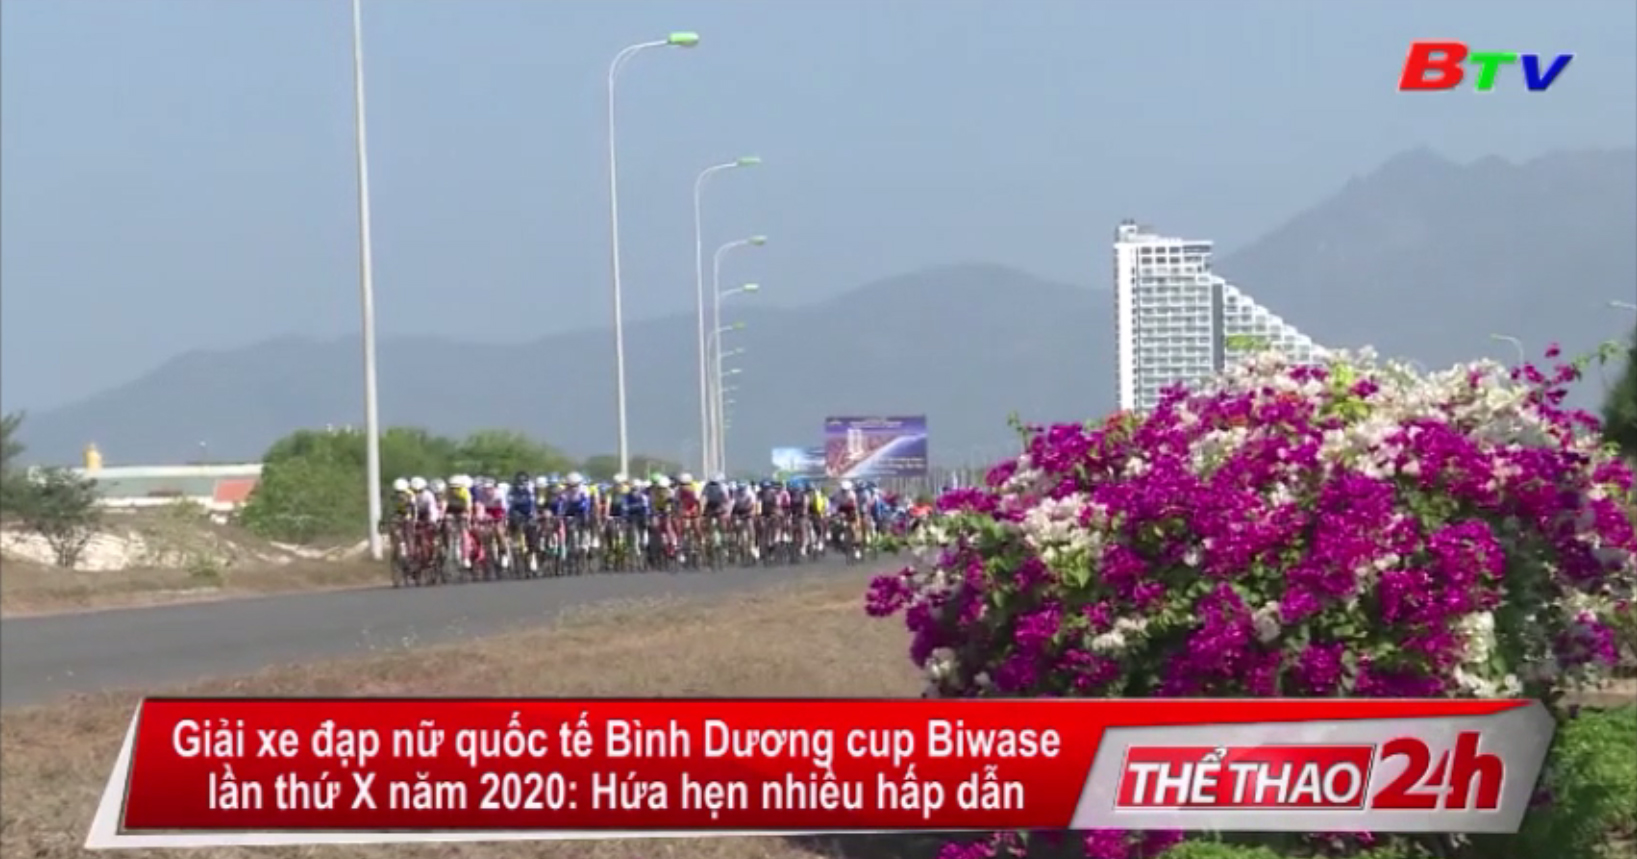 Giải xe đạp nữ quốc tế Bình Dương cúp Biwase lần thứ X năm 2020 – Hứa hẹn nhiều hấp dẫn